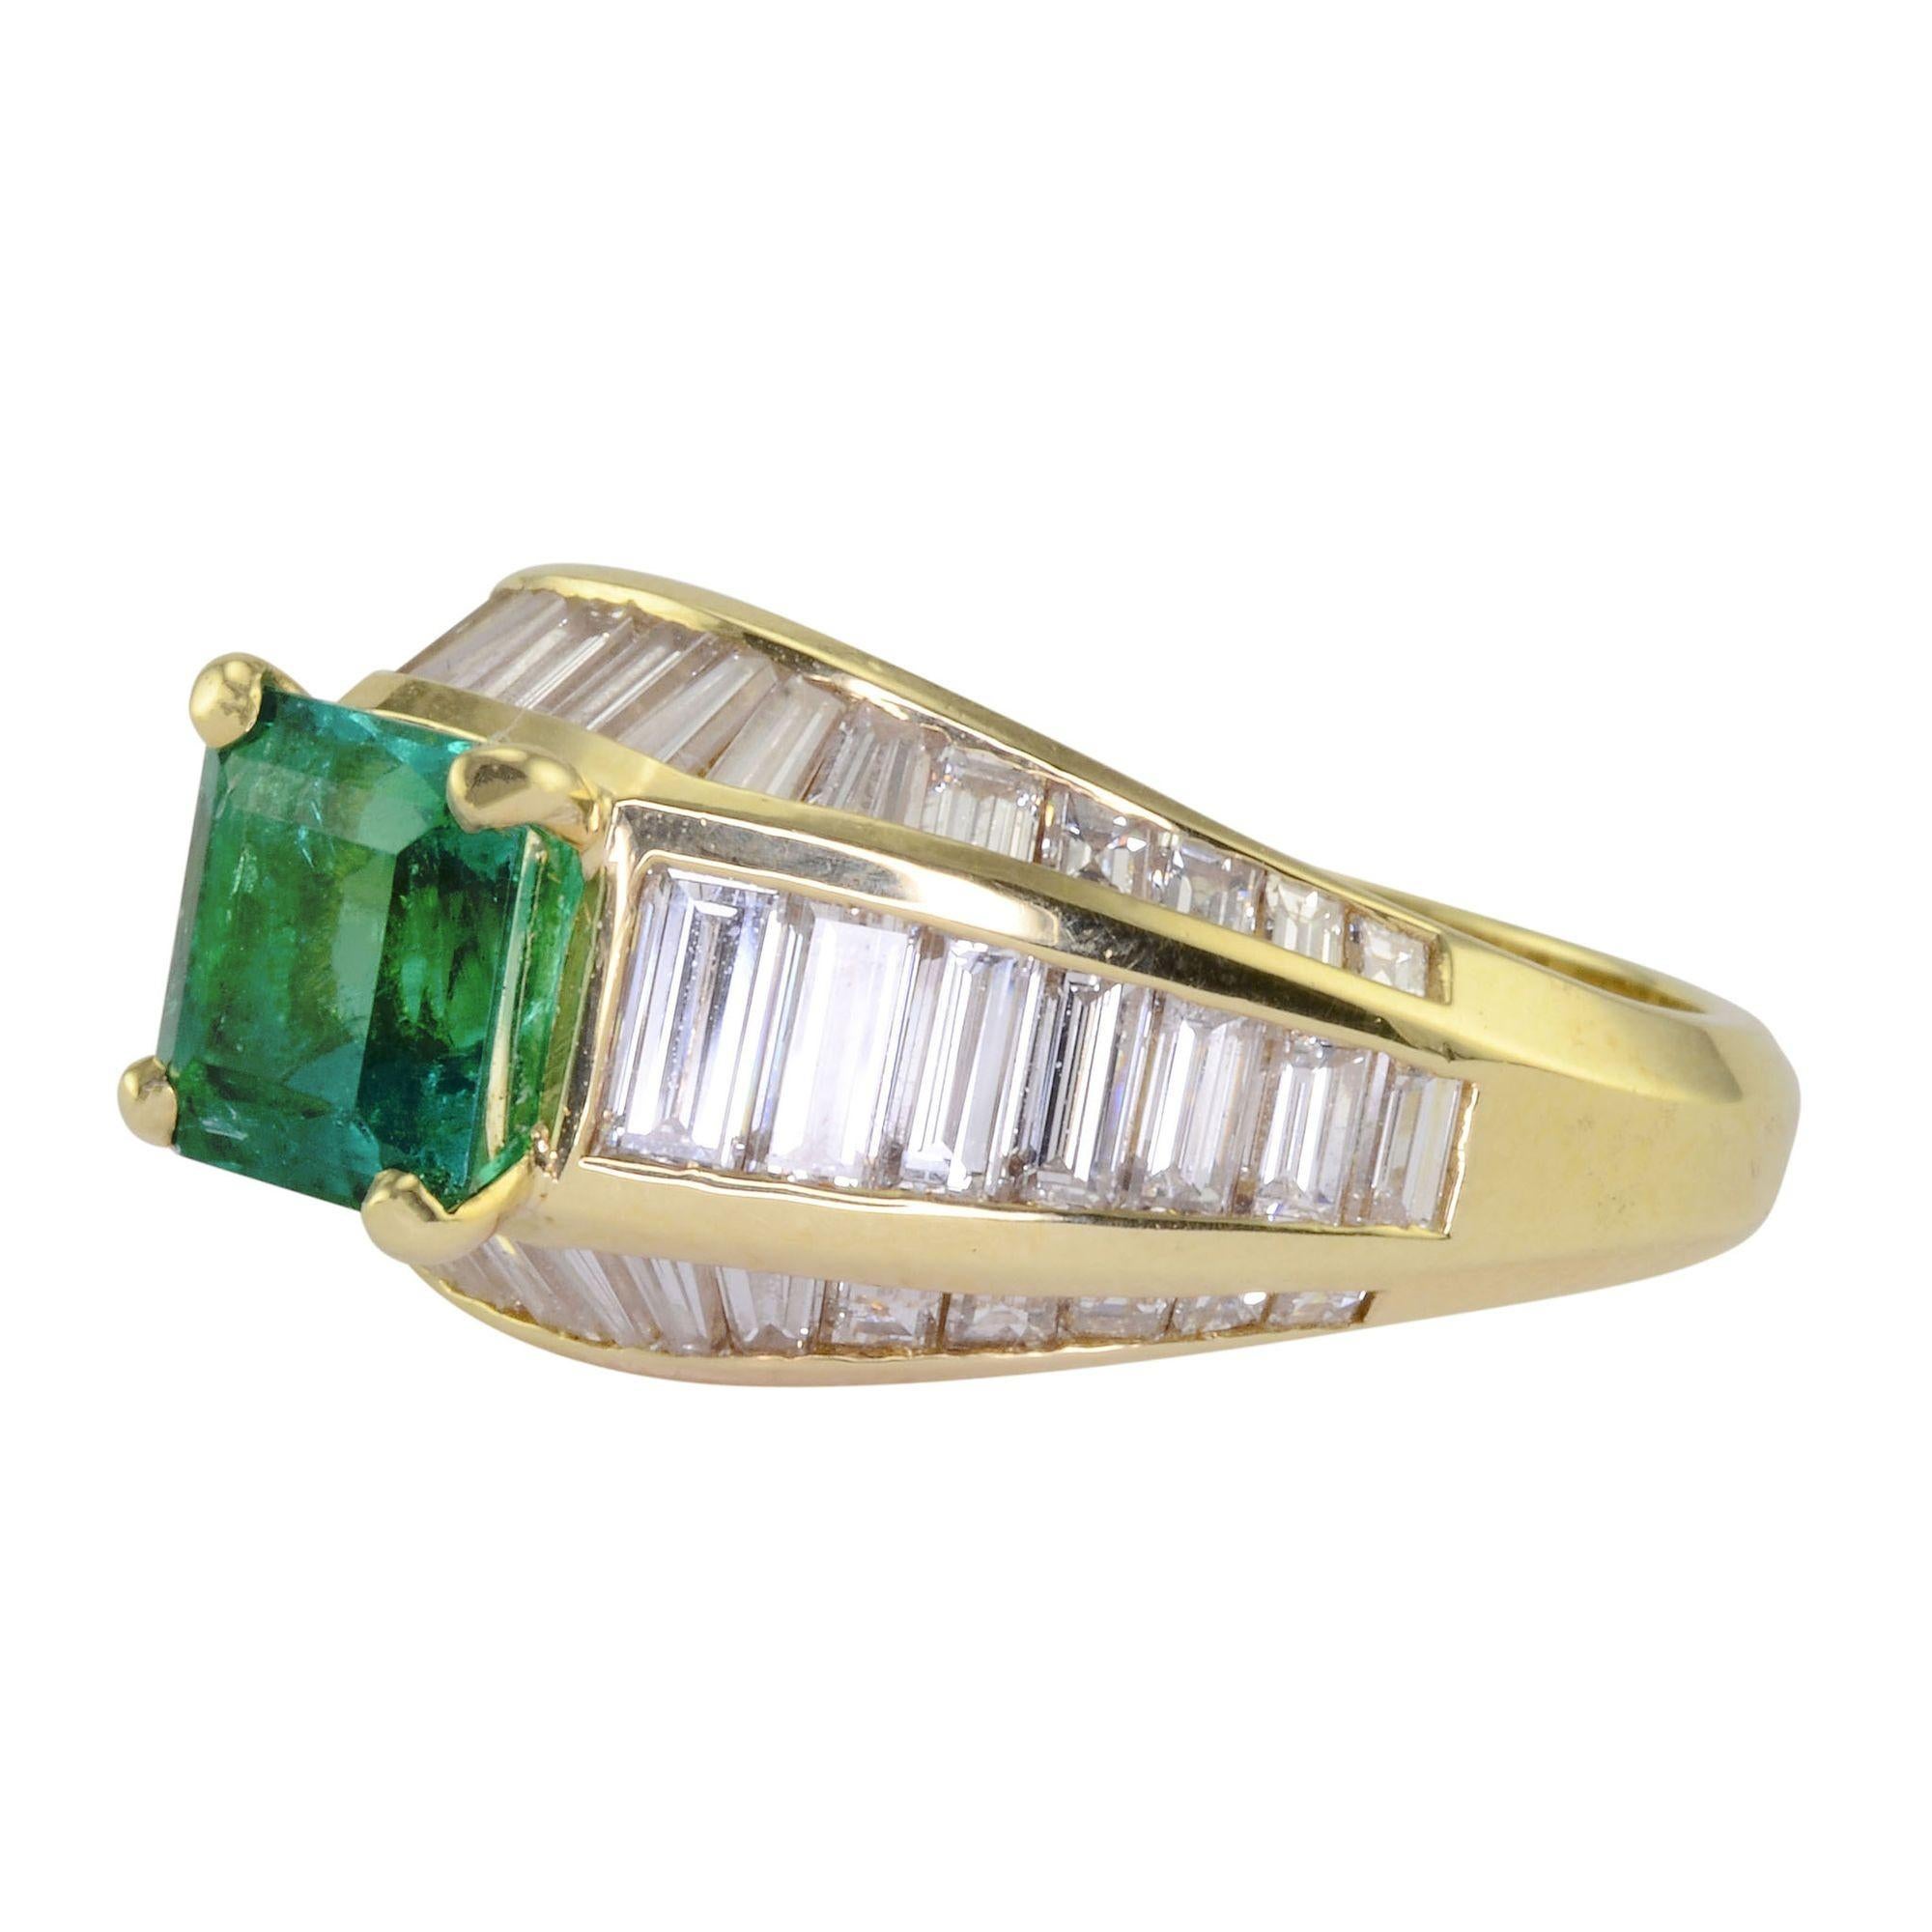 Estate 1,80 Karat Smaragd und Diamant-Ring. Dieser Ring aus 18 Karat Gelbgold hat einen quadratisch geschliffenen Smaragd mit 1,80 Karat und 50 Baguette-Diamanten mit einem Gesamtgewicht von 2,50 Karat und einer Reinheit von VS1-2, Farbe F-G. Der